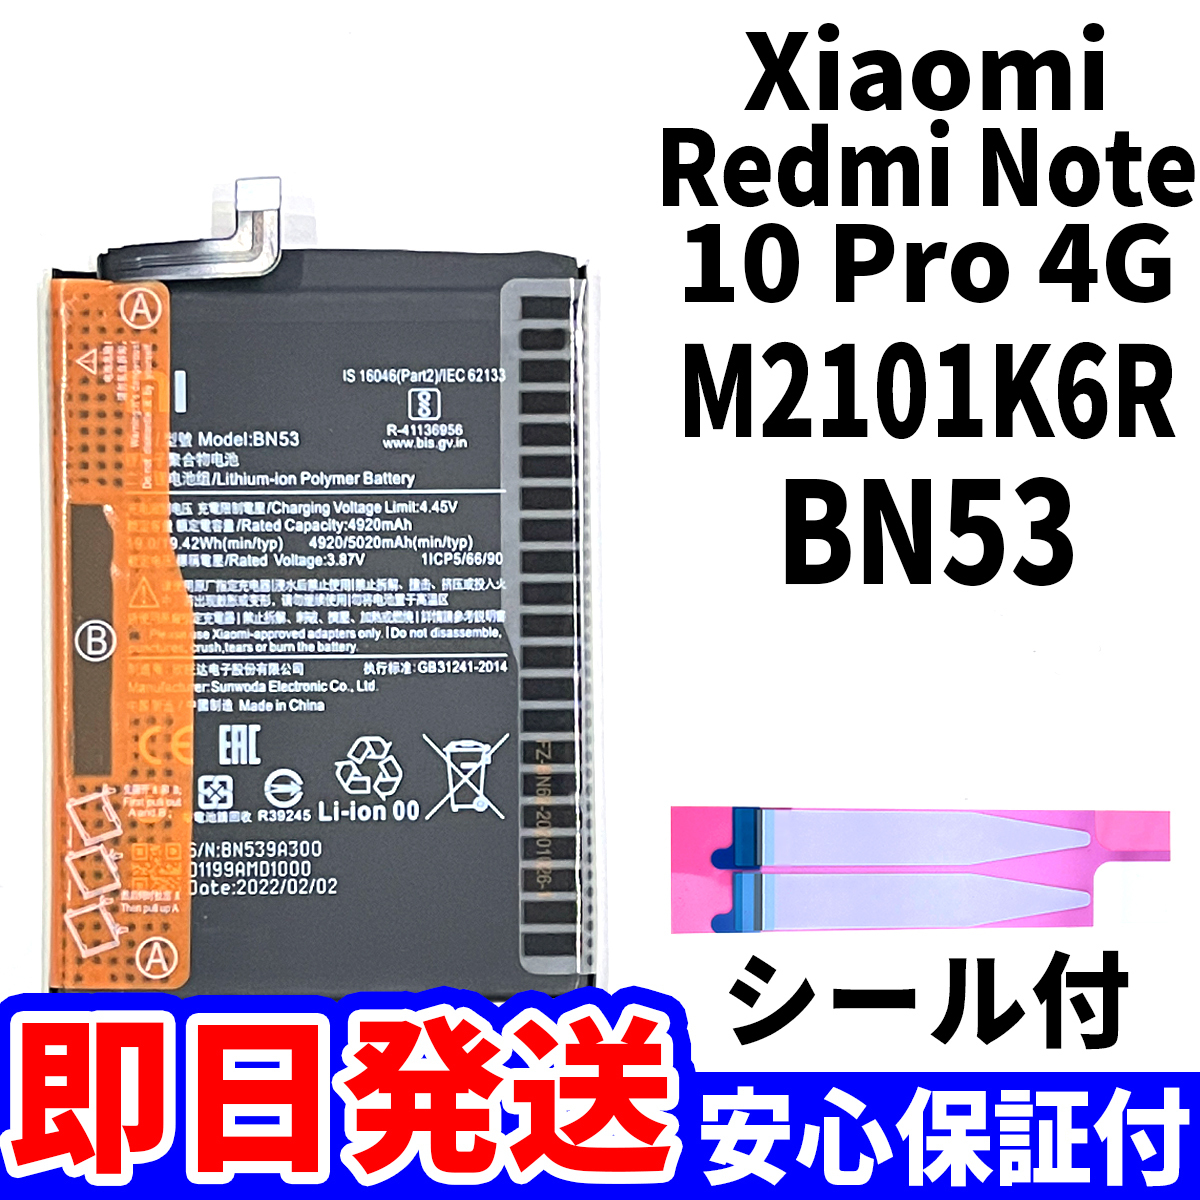 国内即日発送!純正同等新品!Xiaomi Redmi Note10 Pro 4G バッテリー BN53 M2101K6R 電池パック交換 内蔵battery 両面テープ 工具無 単品_画像1